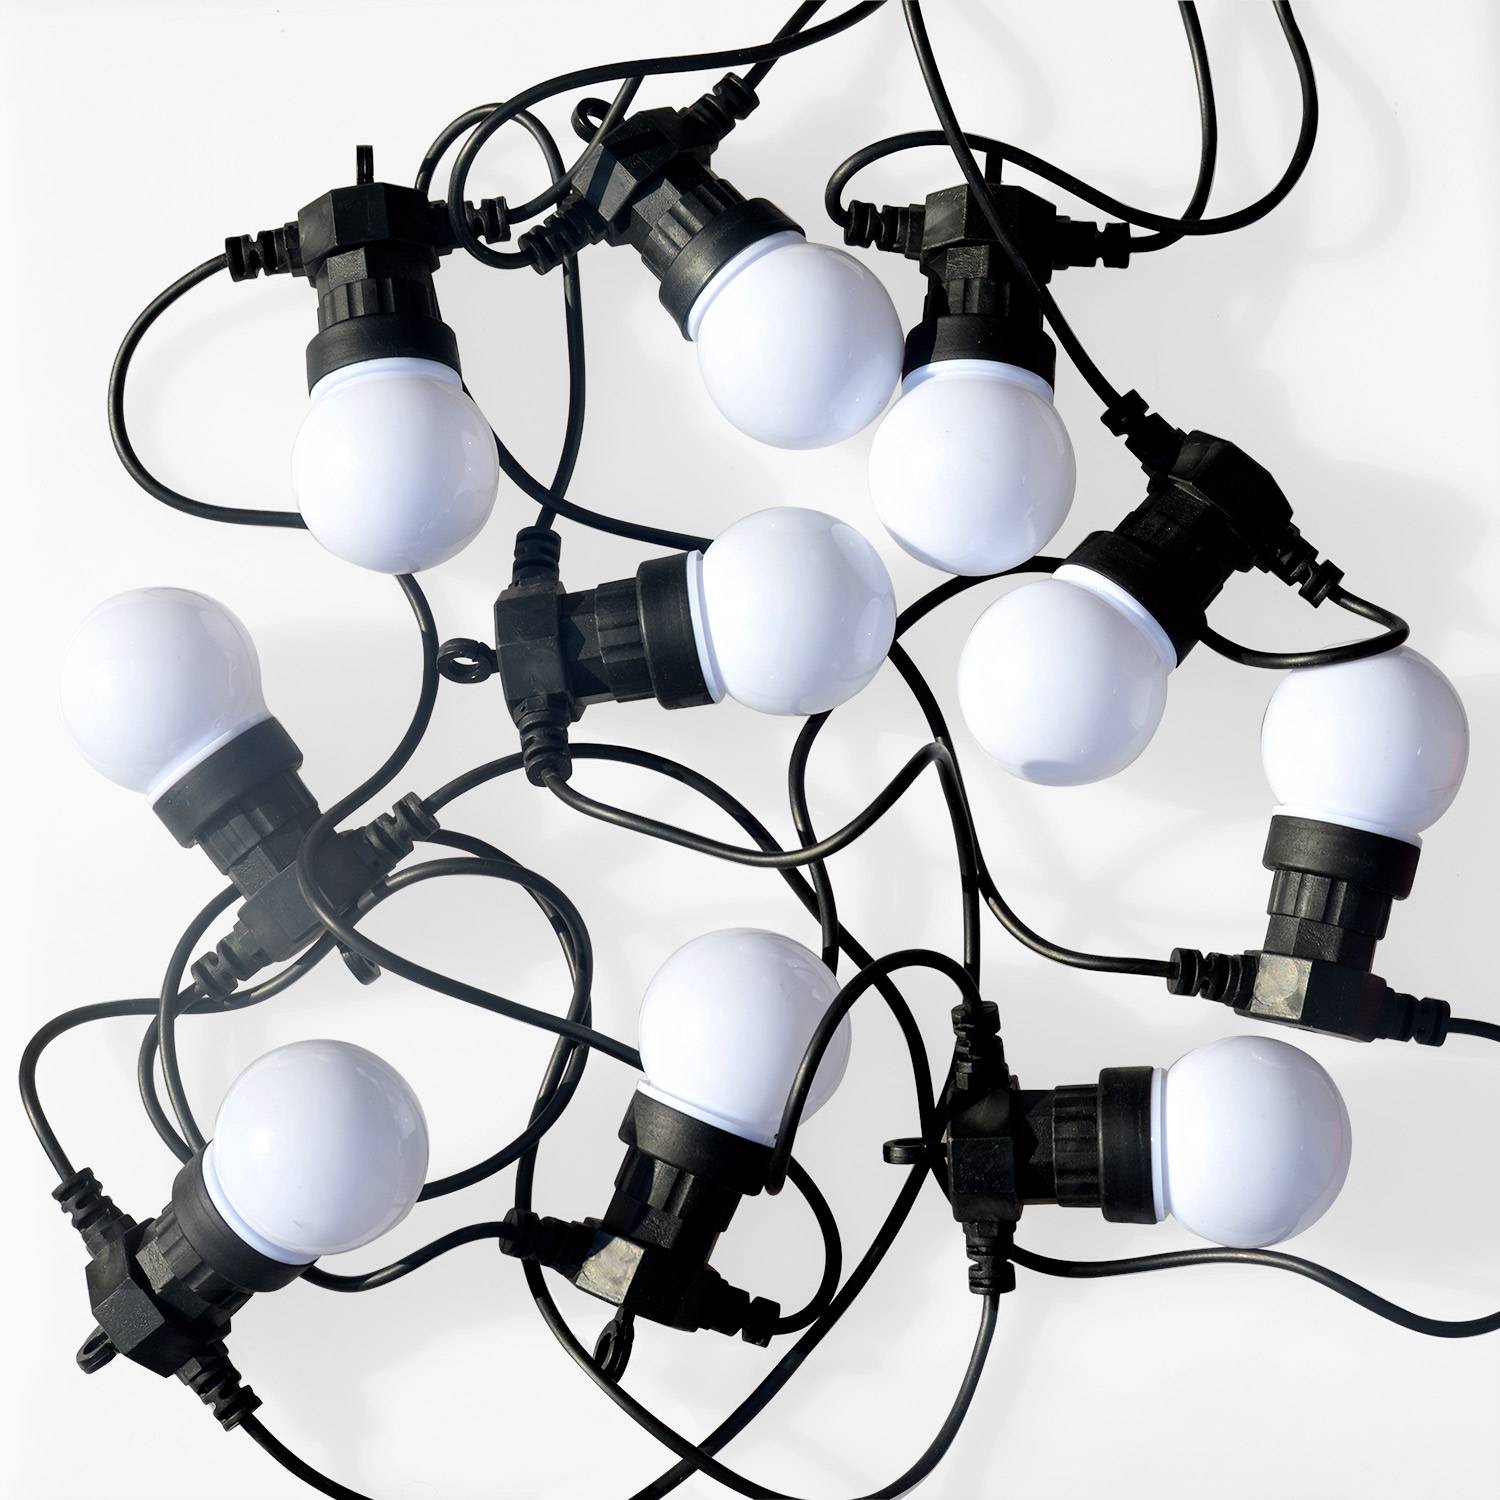 HERACLES - Kerst lichtslinger voor buiten met 10 multicolour lampen, 50 LED's, op batterijen, timerfunctie, 8 modi, 4,5m lang Photo2